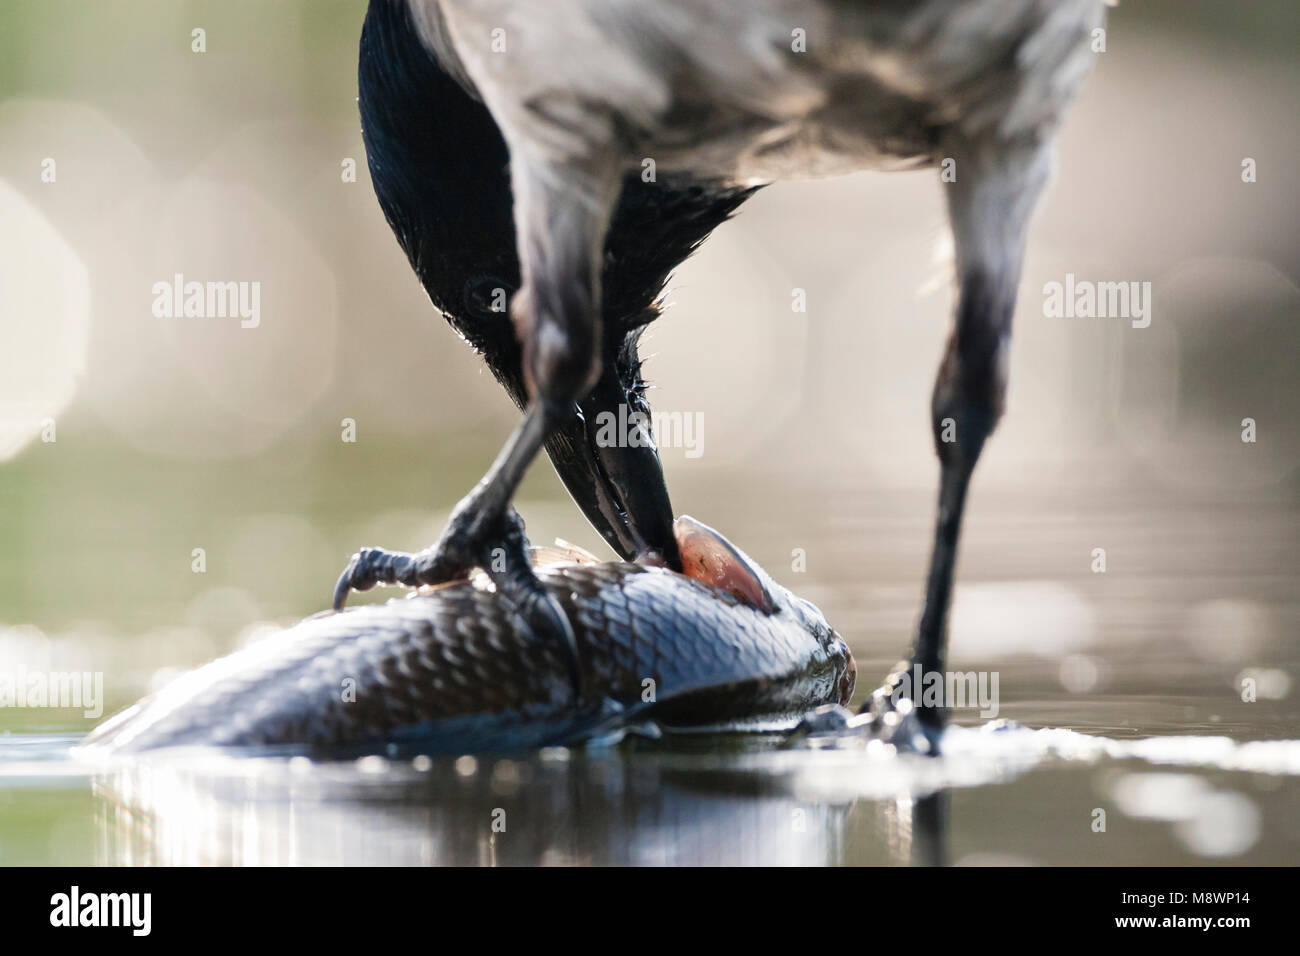 Bonte Kraai eet vis im tegenlicht; Nebelkrähe Fisch zu essen, der Hintergrundbeleuchtung Stockfoto